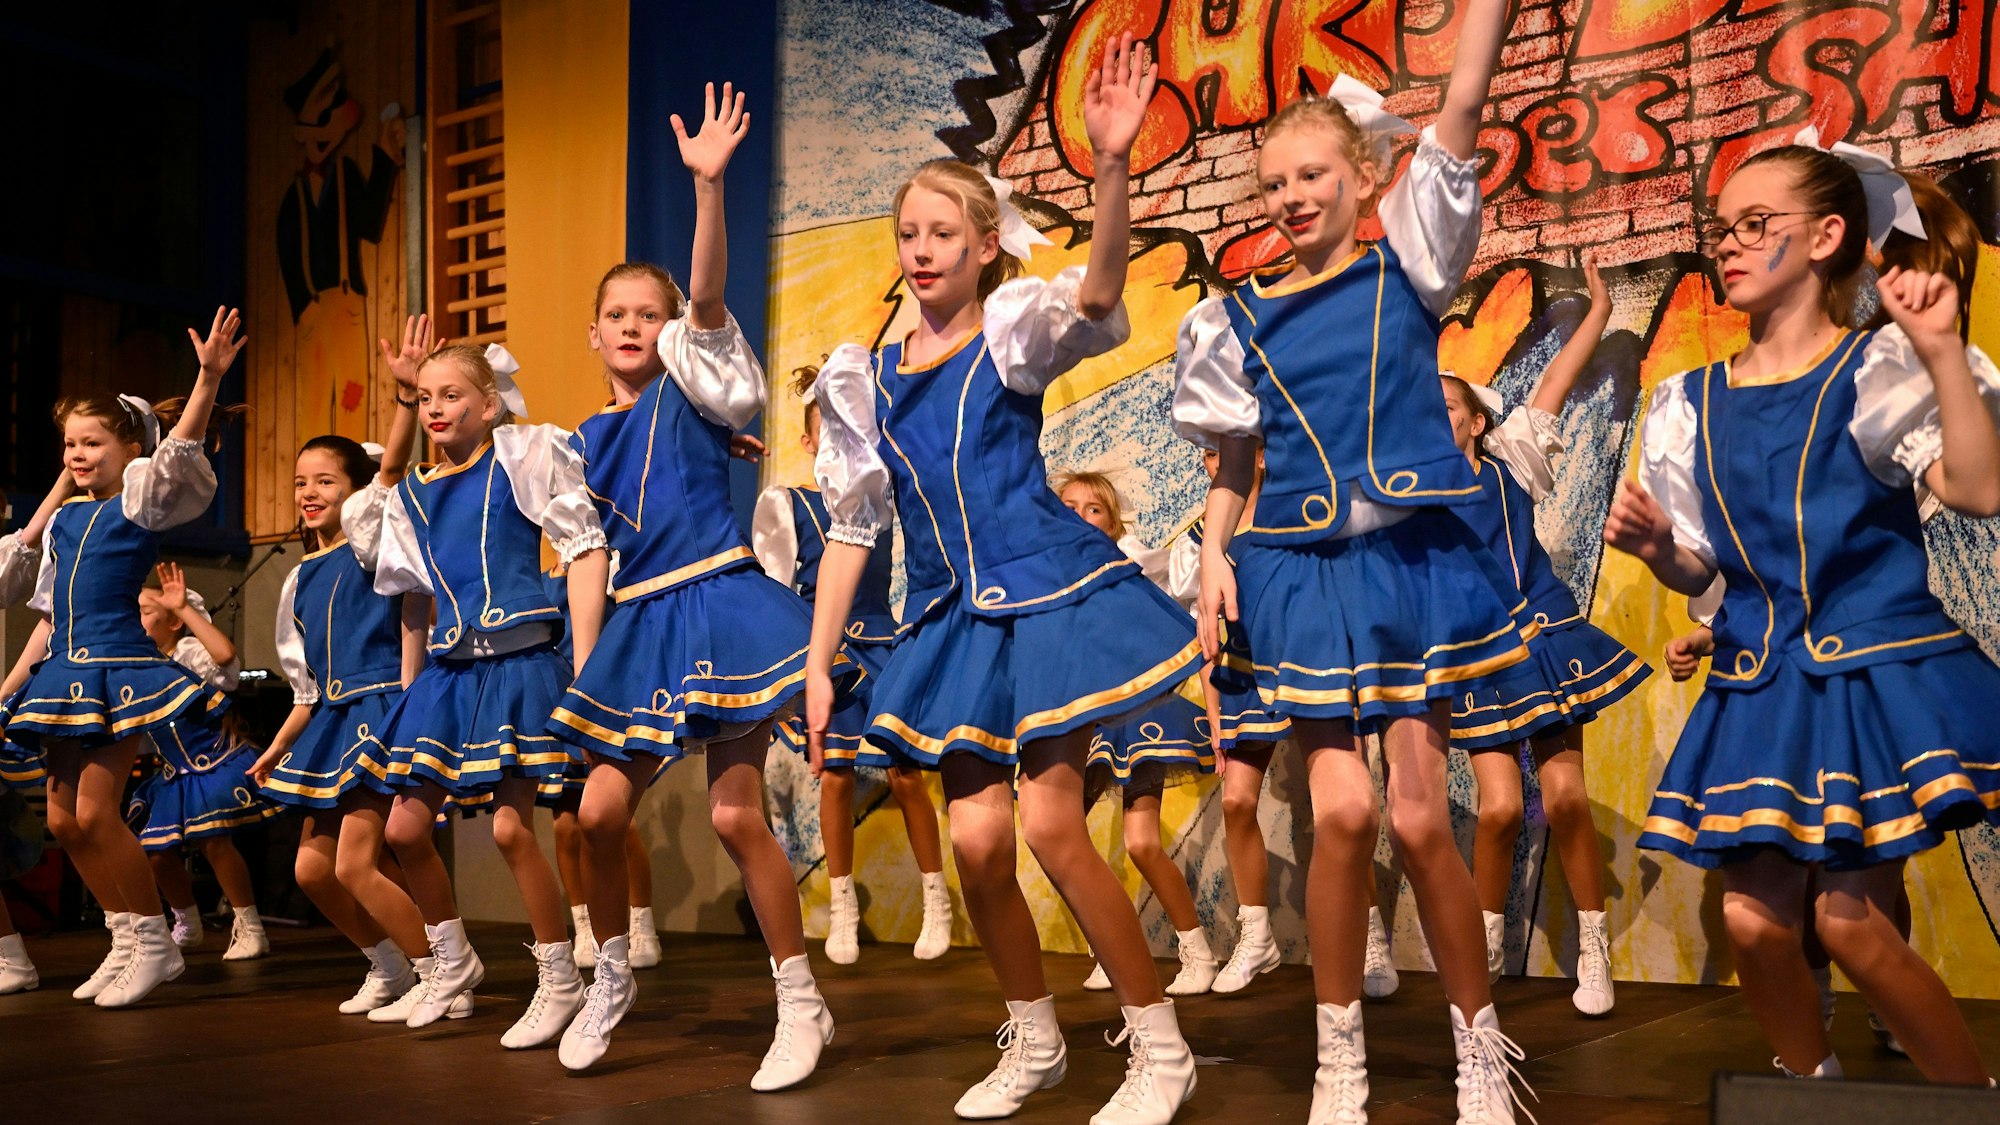 Die 20-köpfige Kindertanzgruppe Chri-Di-Ro-Gos Pänz tanzt in blauen Kleidern auf der Bühne.